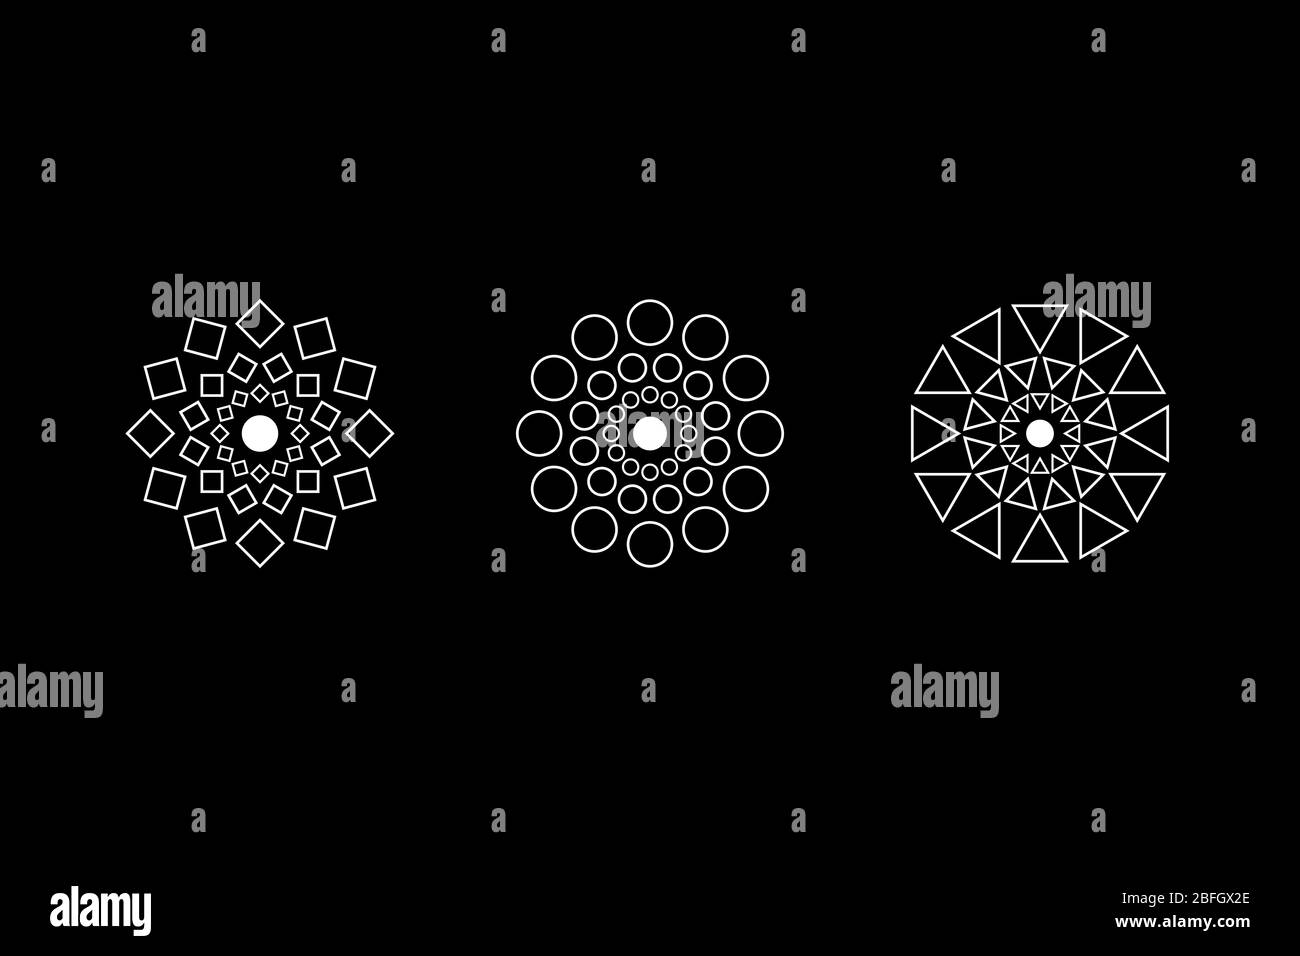 Spirituelle symmetrische Geometrie weißes Symbol gesetzt. Kreis, Quadrat, Rauten Figuren. UFO-Zeichen. Design-Symbole für Puzzle, Logik, metroidvania Spiele. Vektorgrafik. Stock Vektor